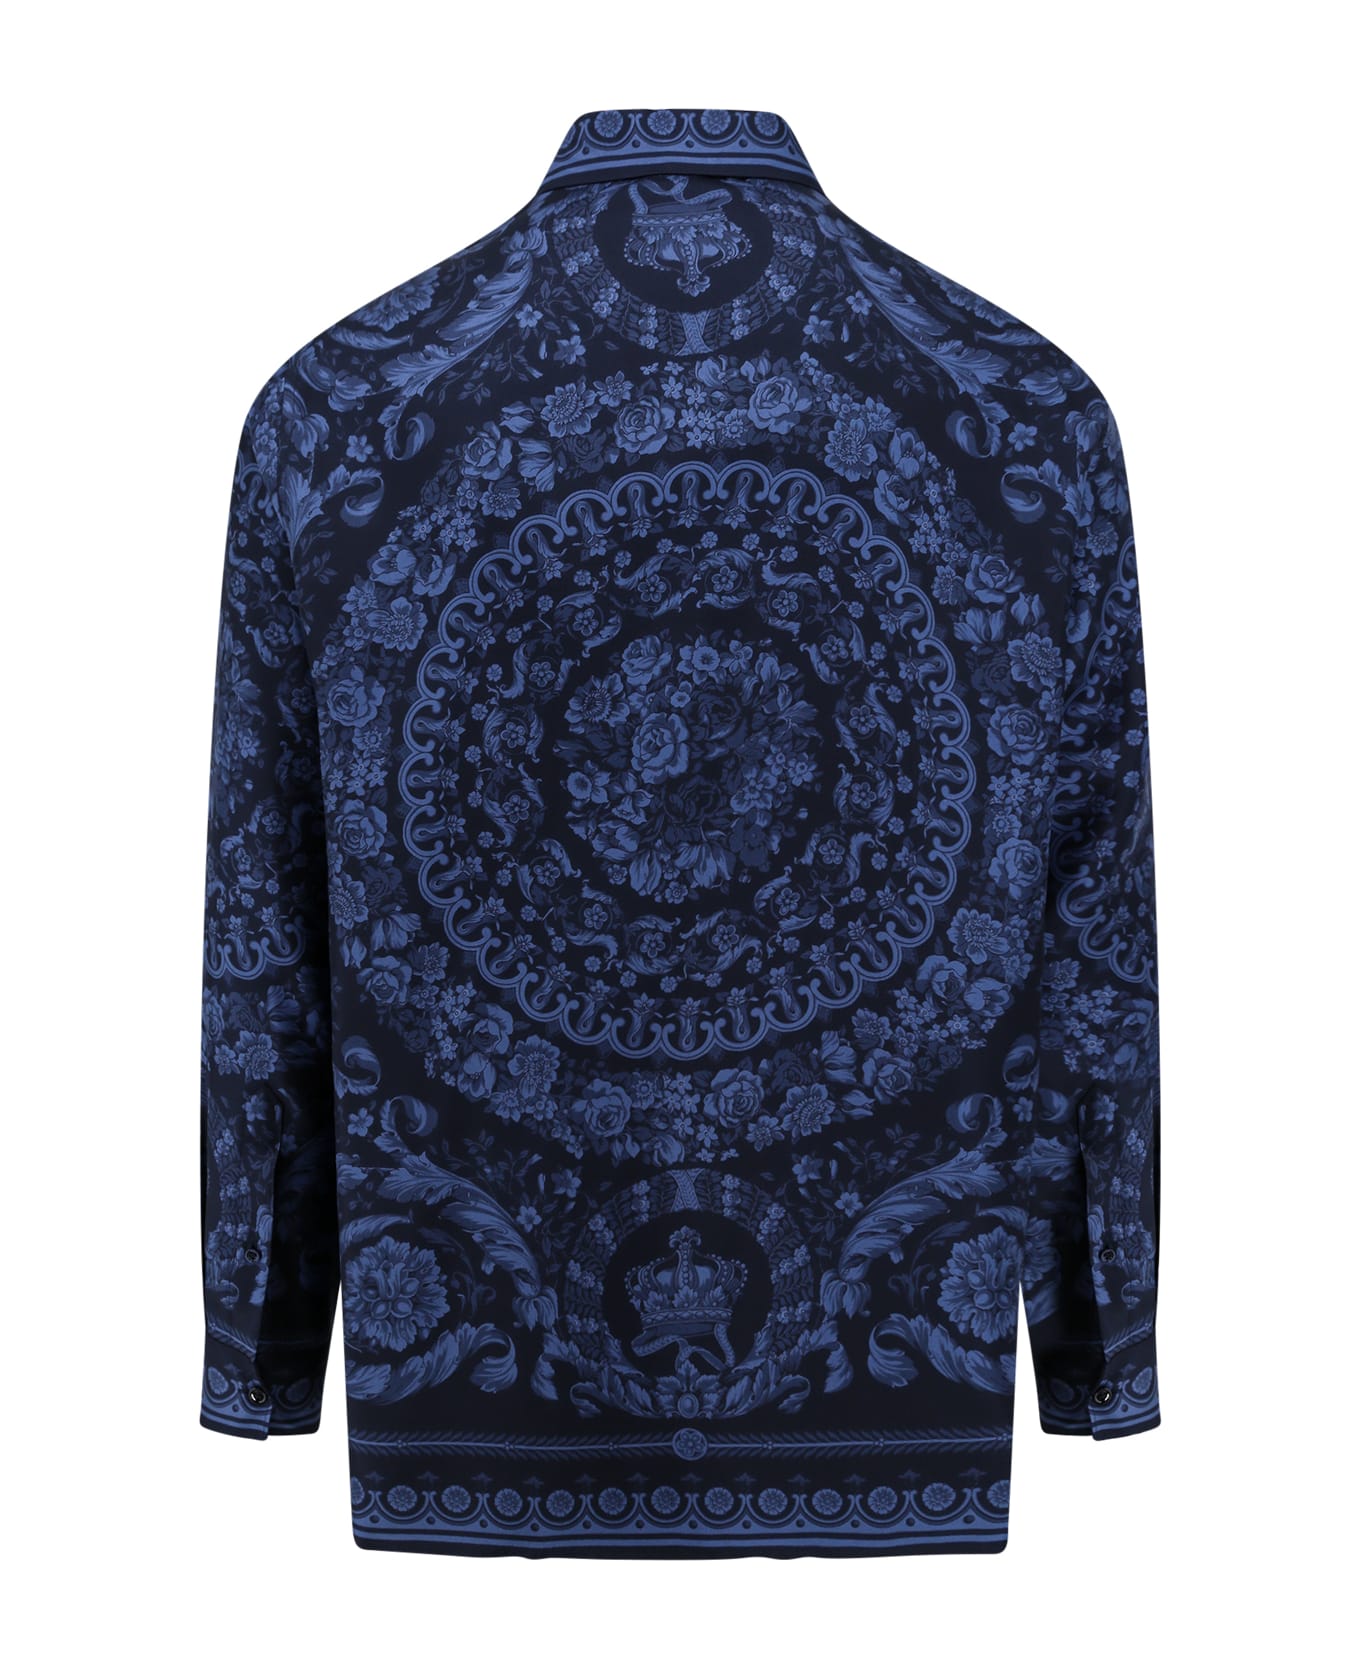 Versace Shirt - Navy Blue